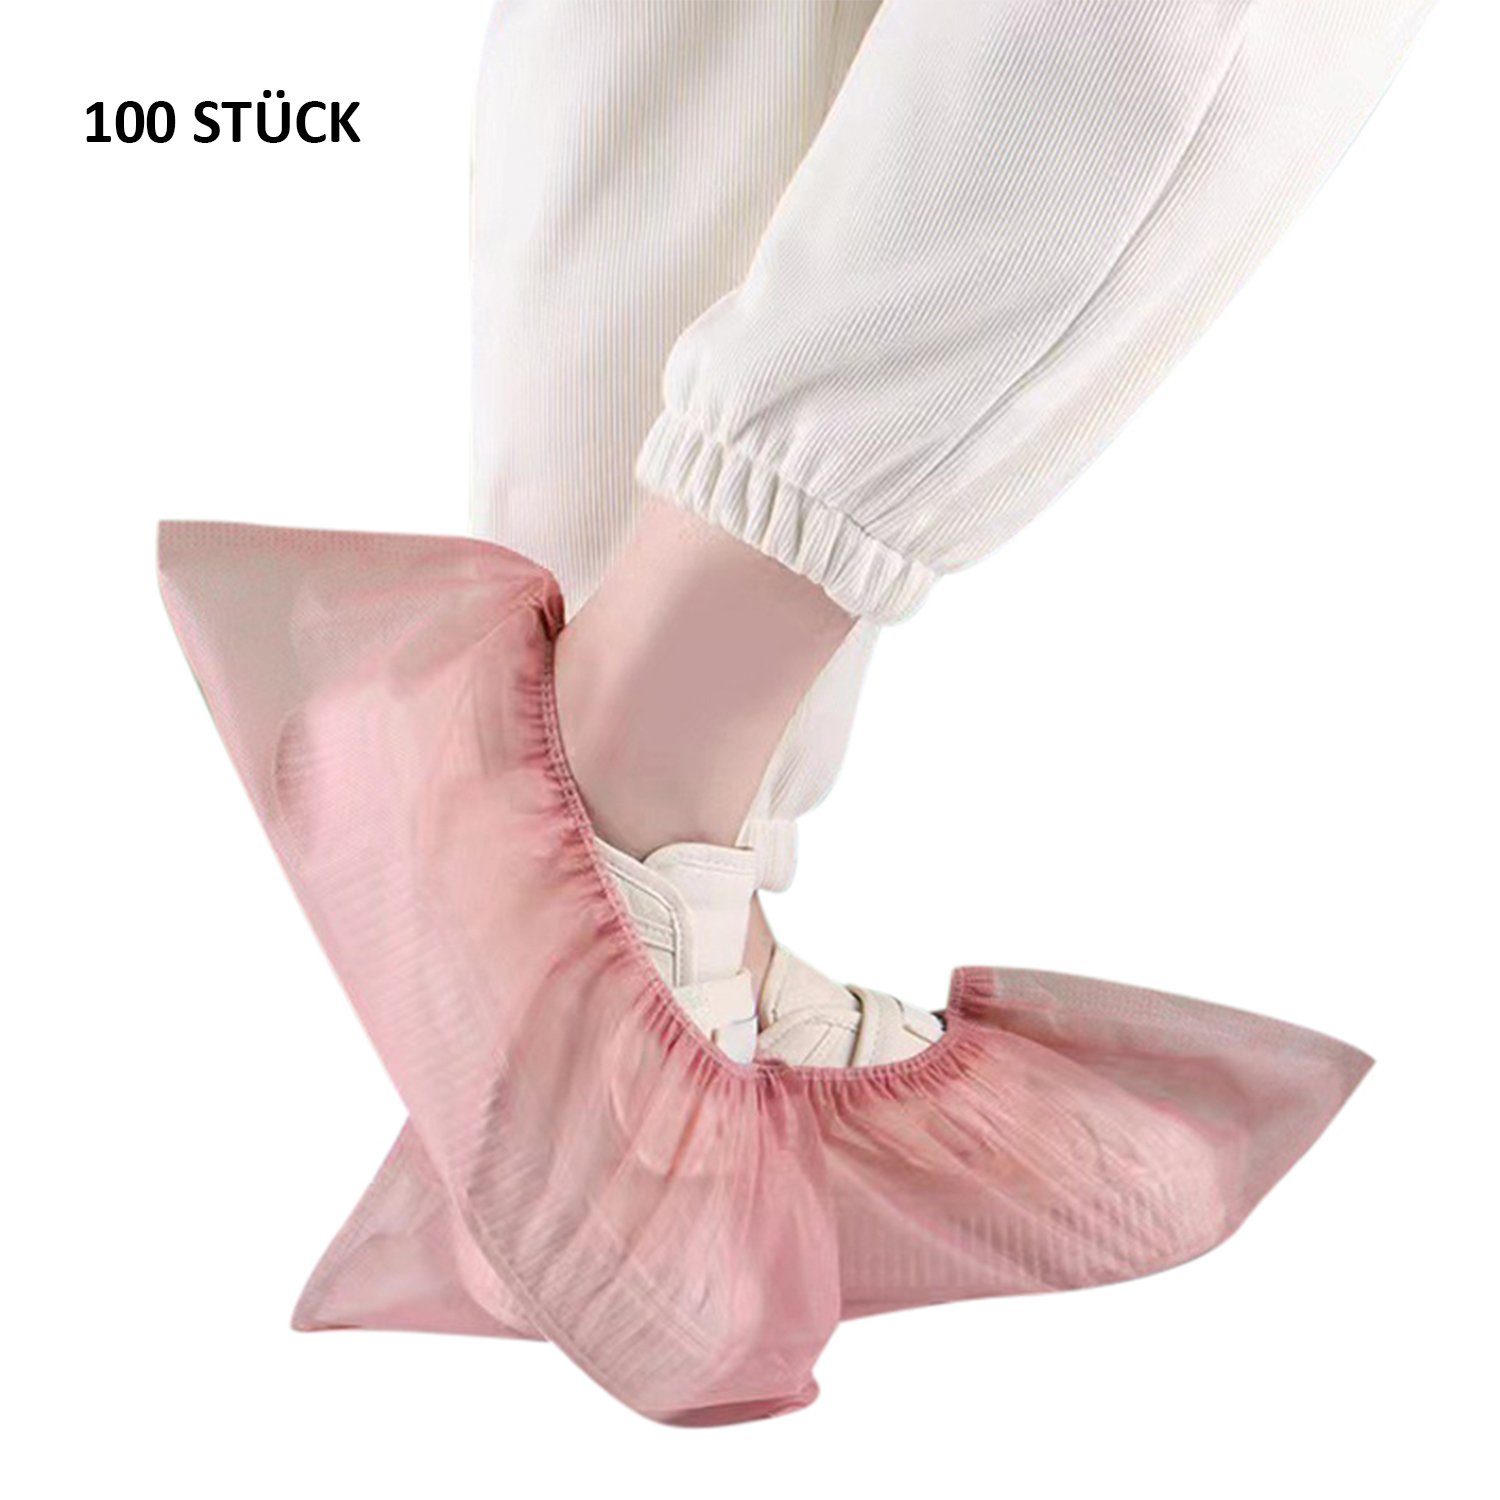 Daisred Schuhüberzieher Einweg-Stiefel rutschfest Stück Schuhüberzieher Rosa 100 hygienische